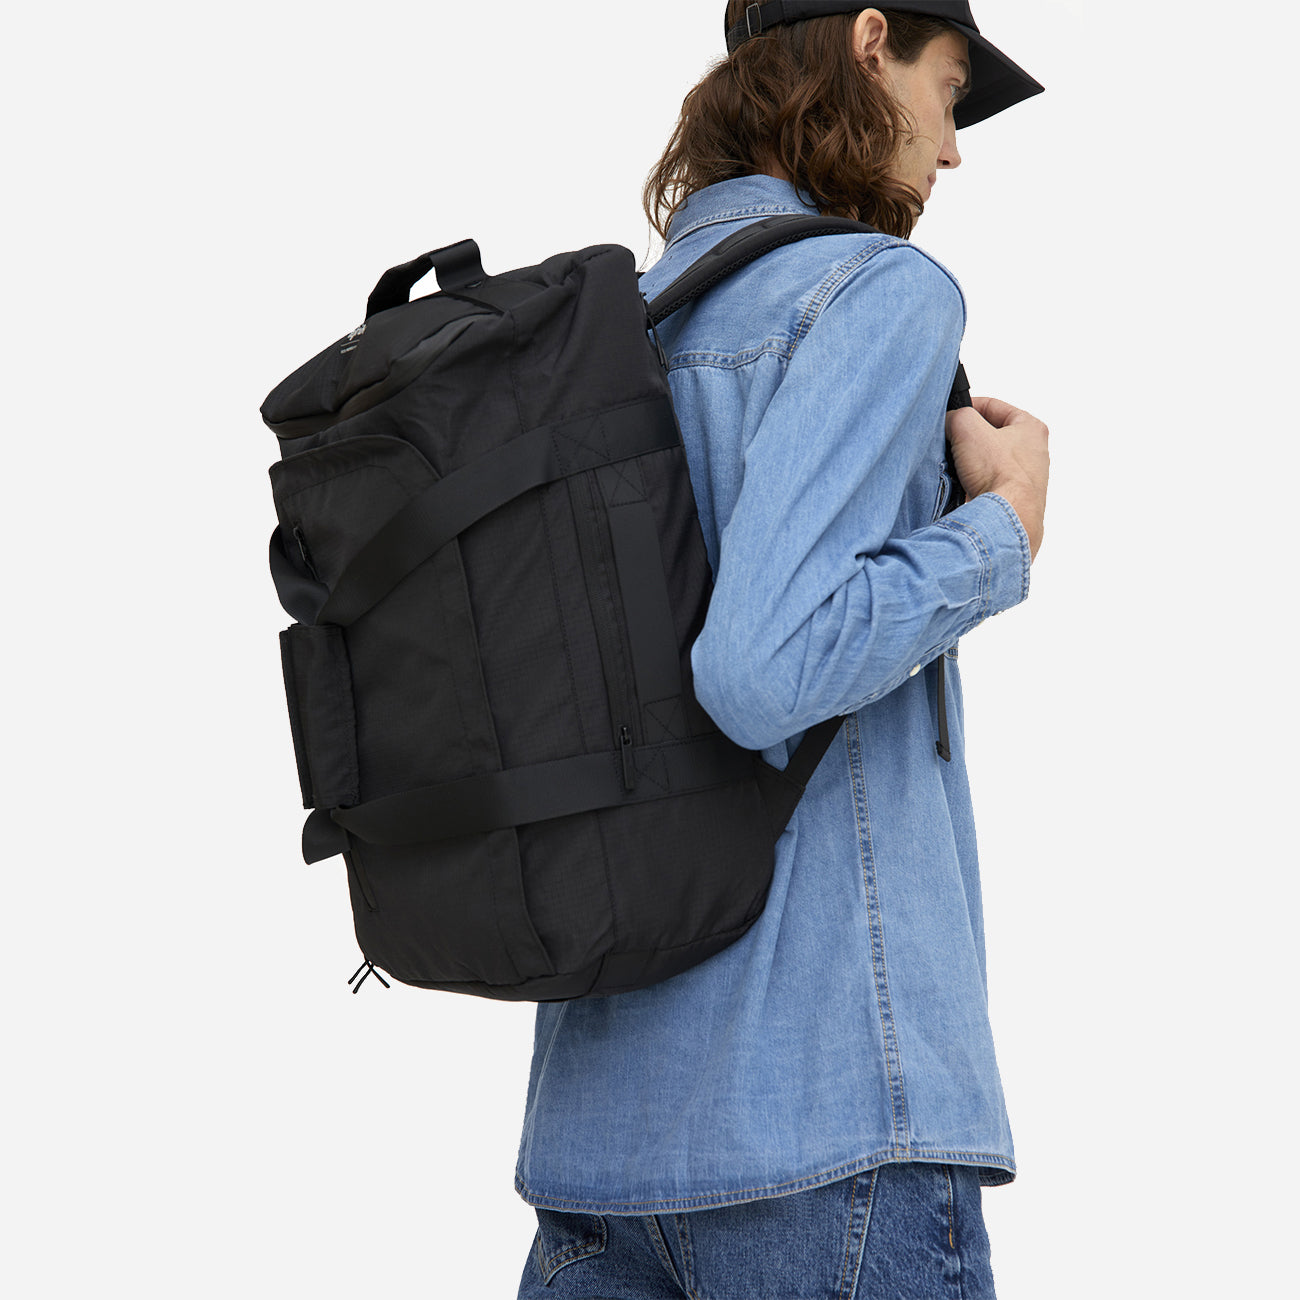 Homme portant un sac à dos convertible éco-responsable noir, vue latérale